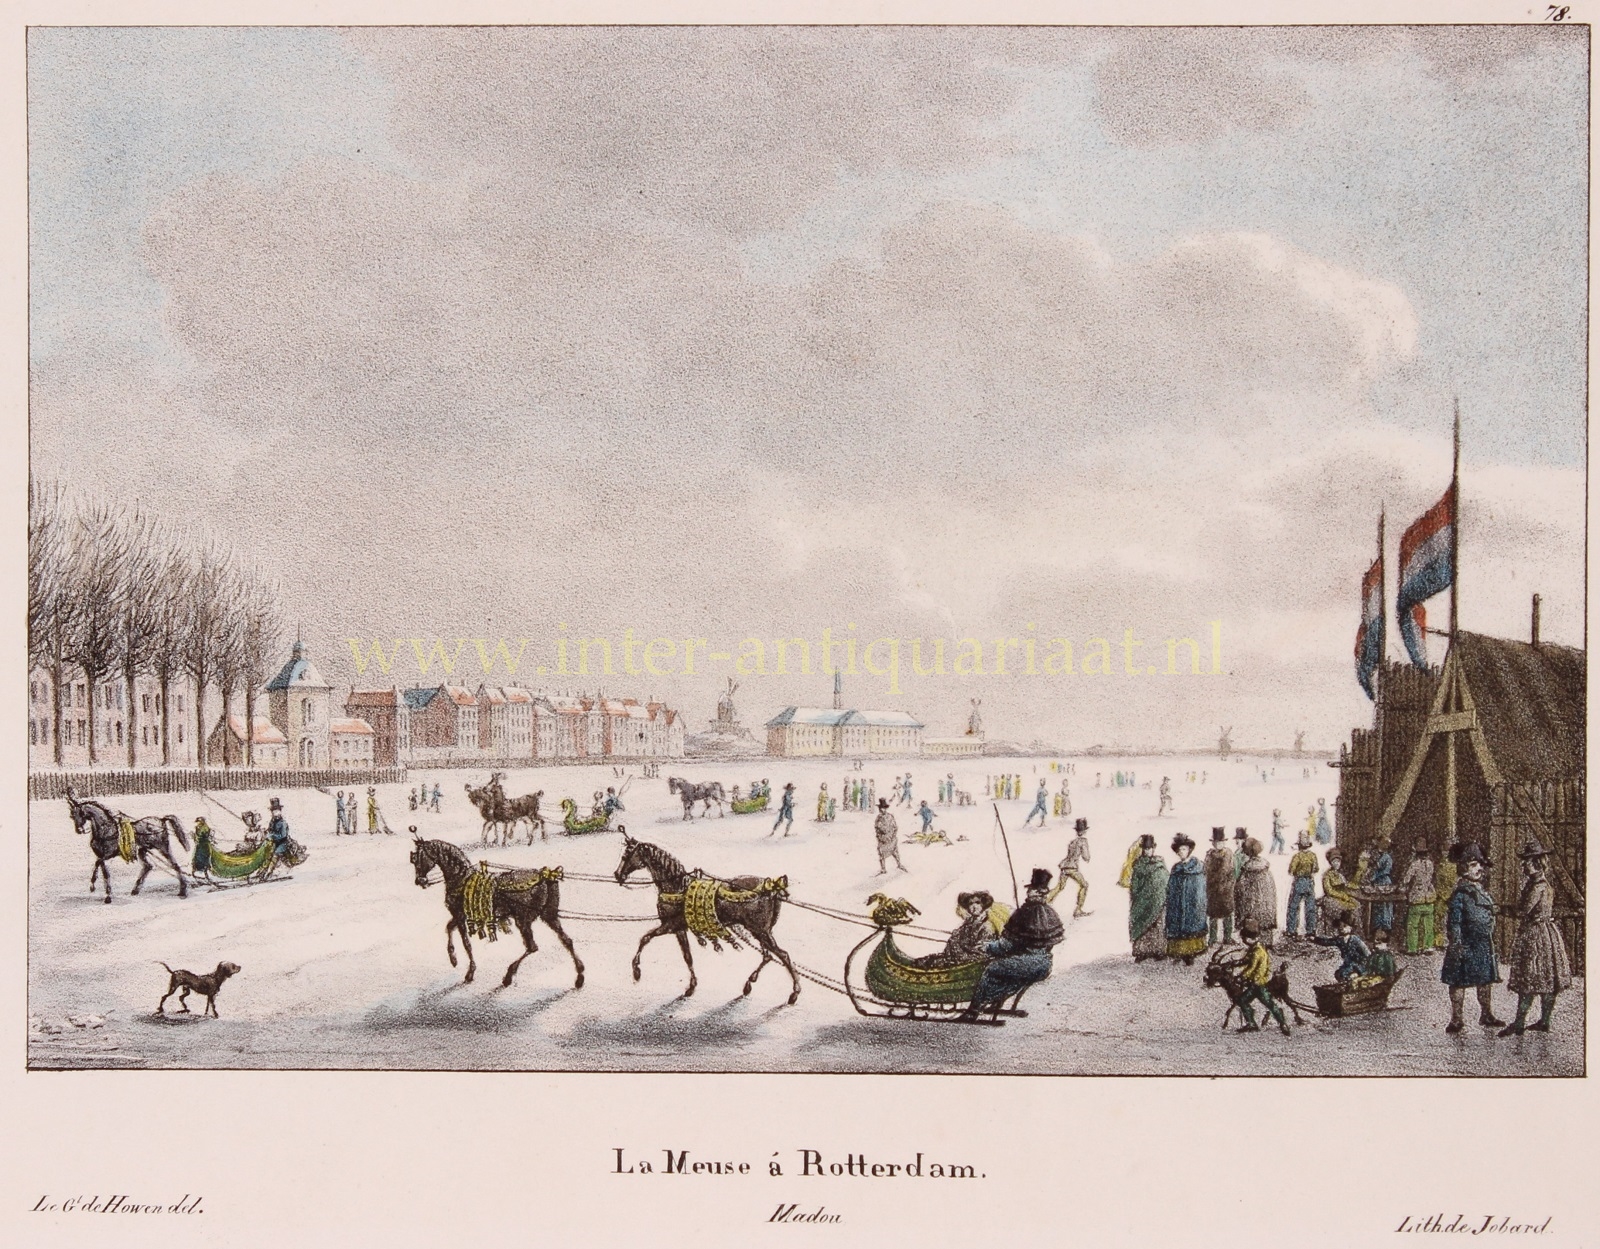  - Rotterdam ice skating - Ambroise Jobard after Otto von der Howen, 1825